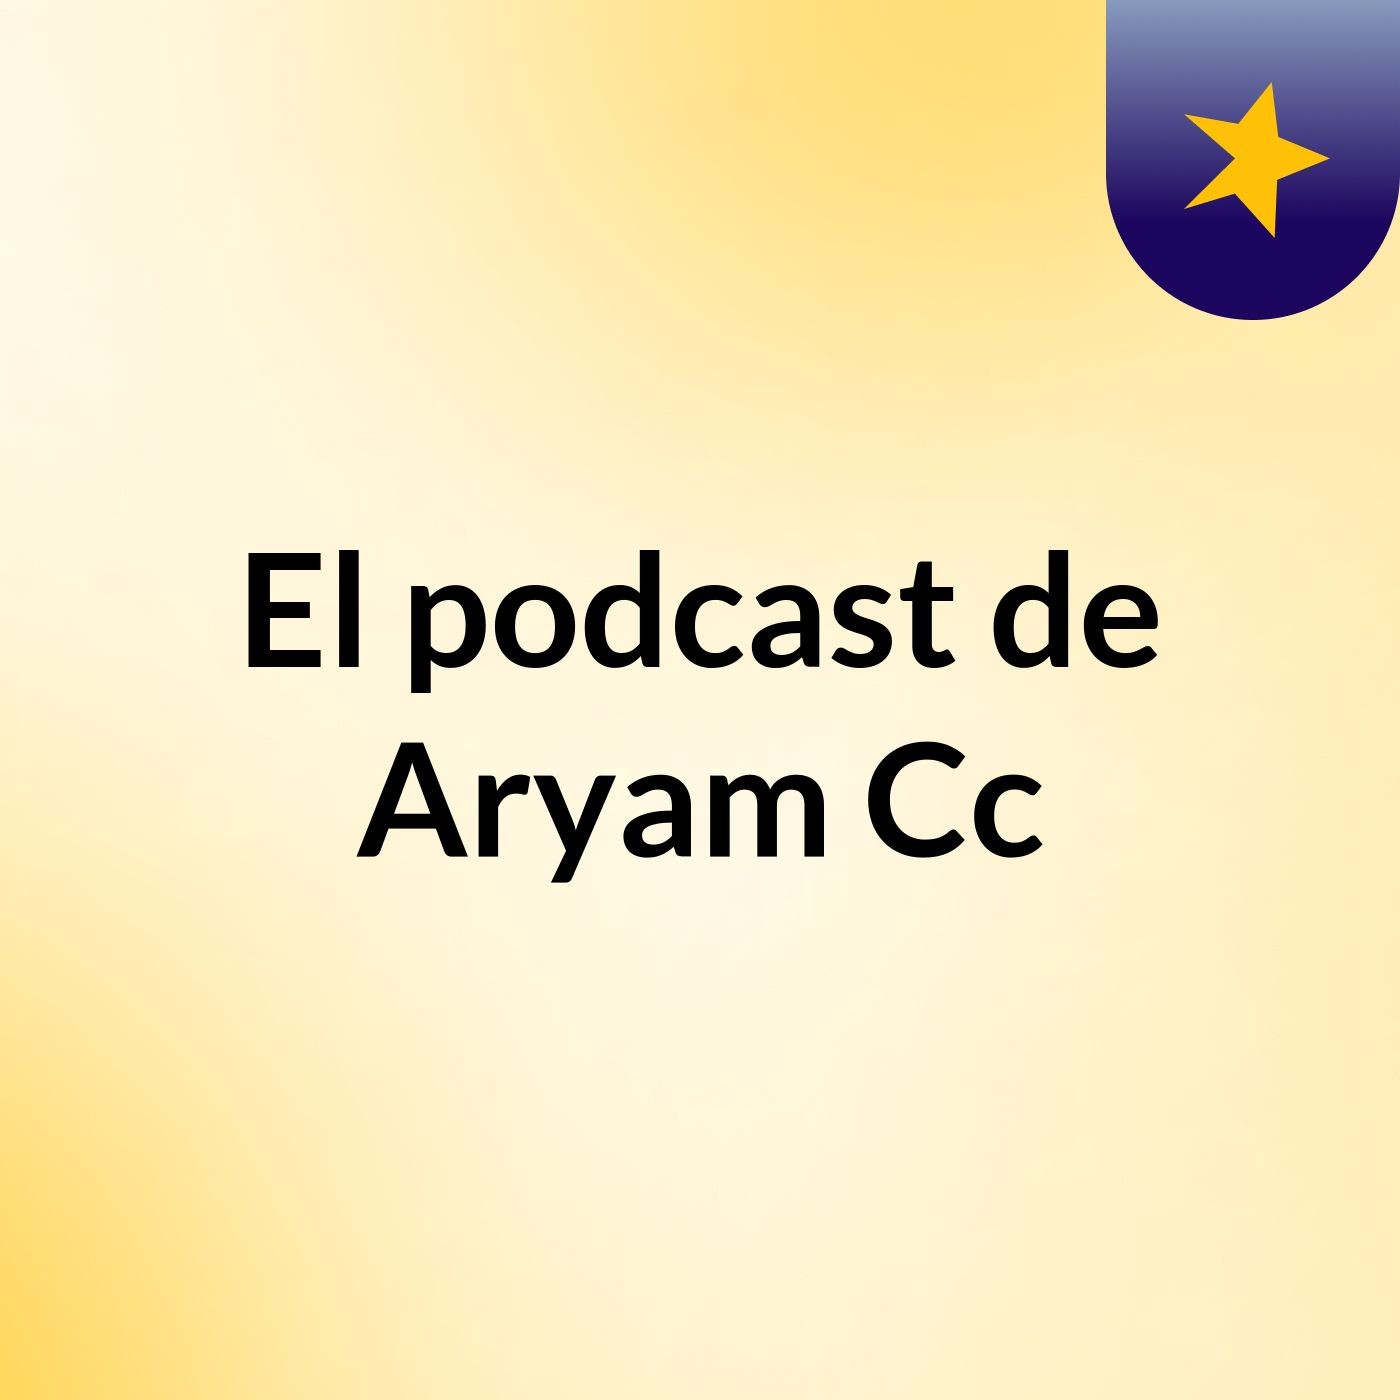 Episodio 3 - El podcast de Aryam Cc